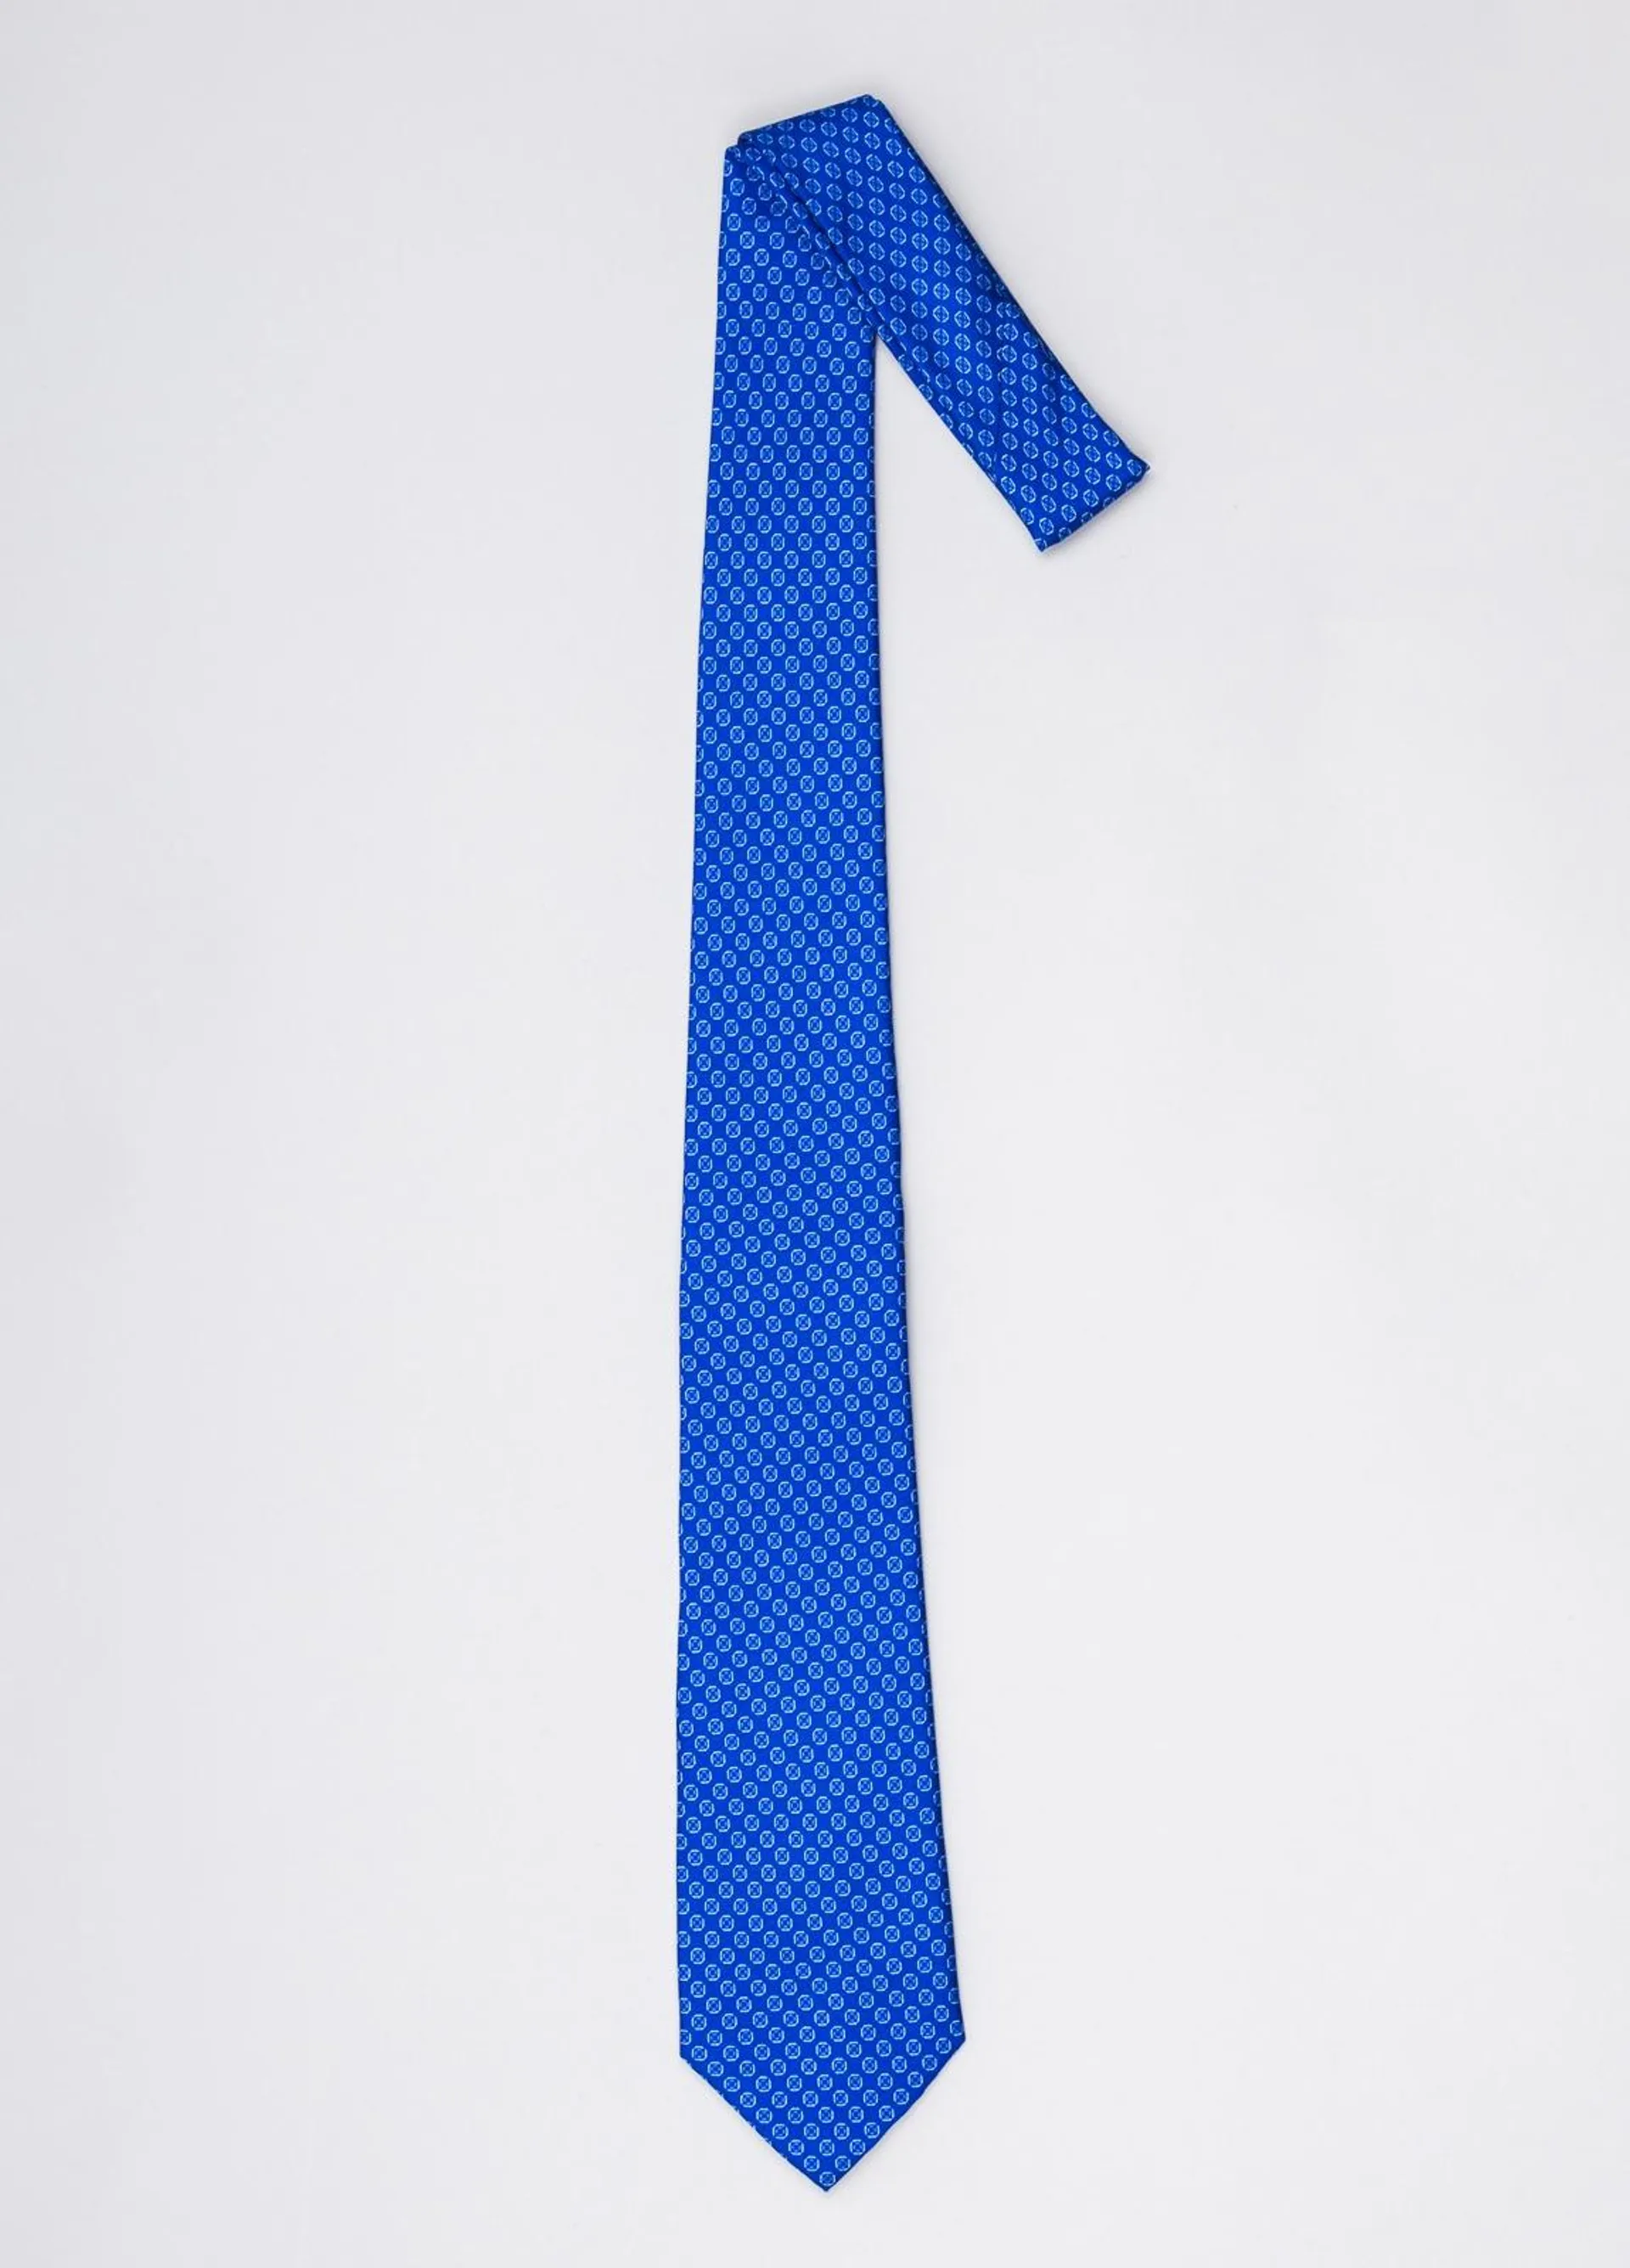 Corbata FUREST COLECCIÓN color azulón con dibujo geométrico